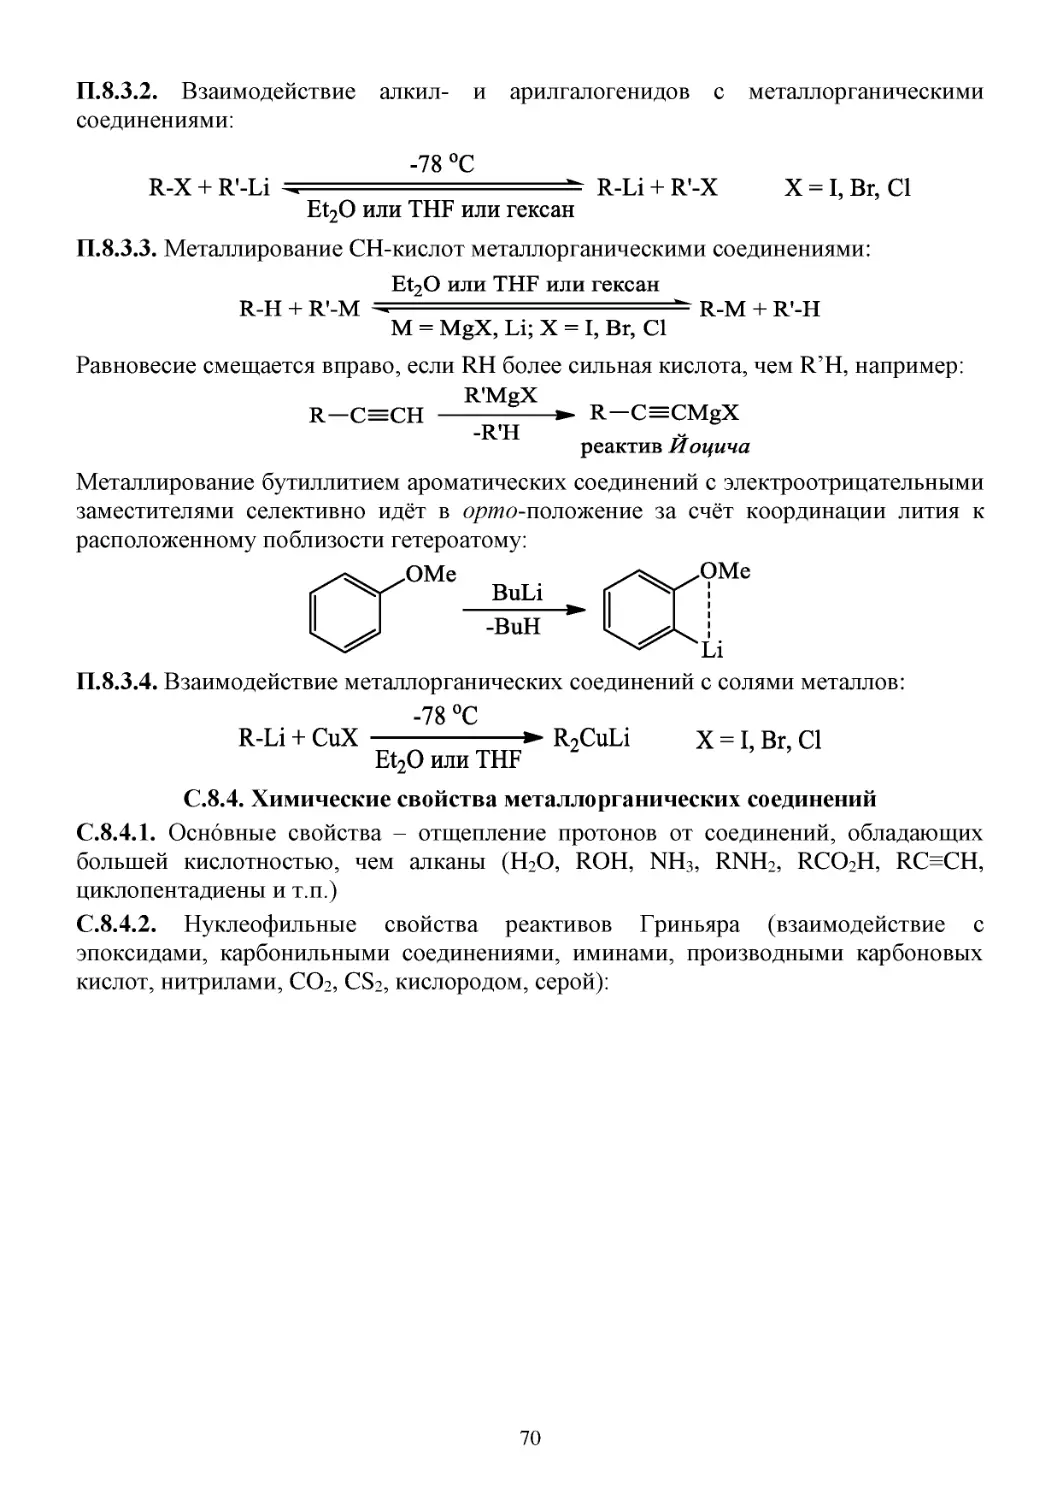 С.8.4. Химические свойства металлорганических соединений